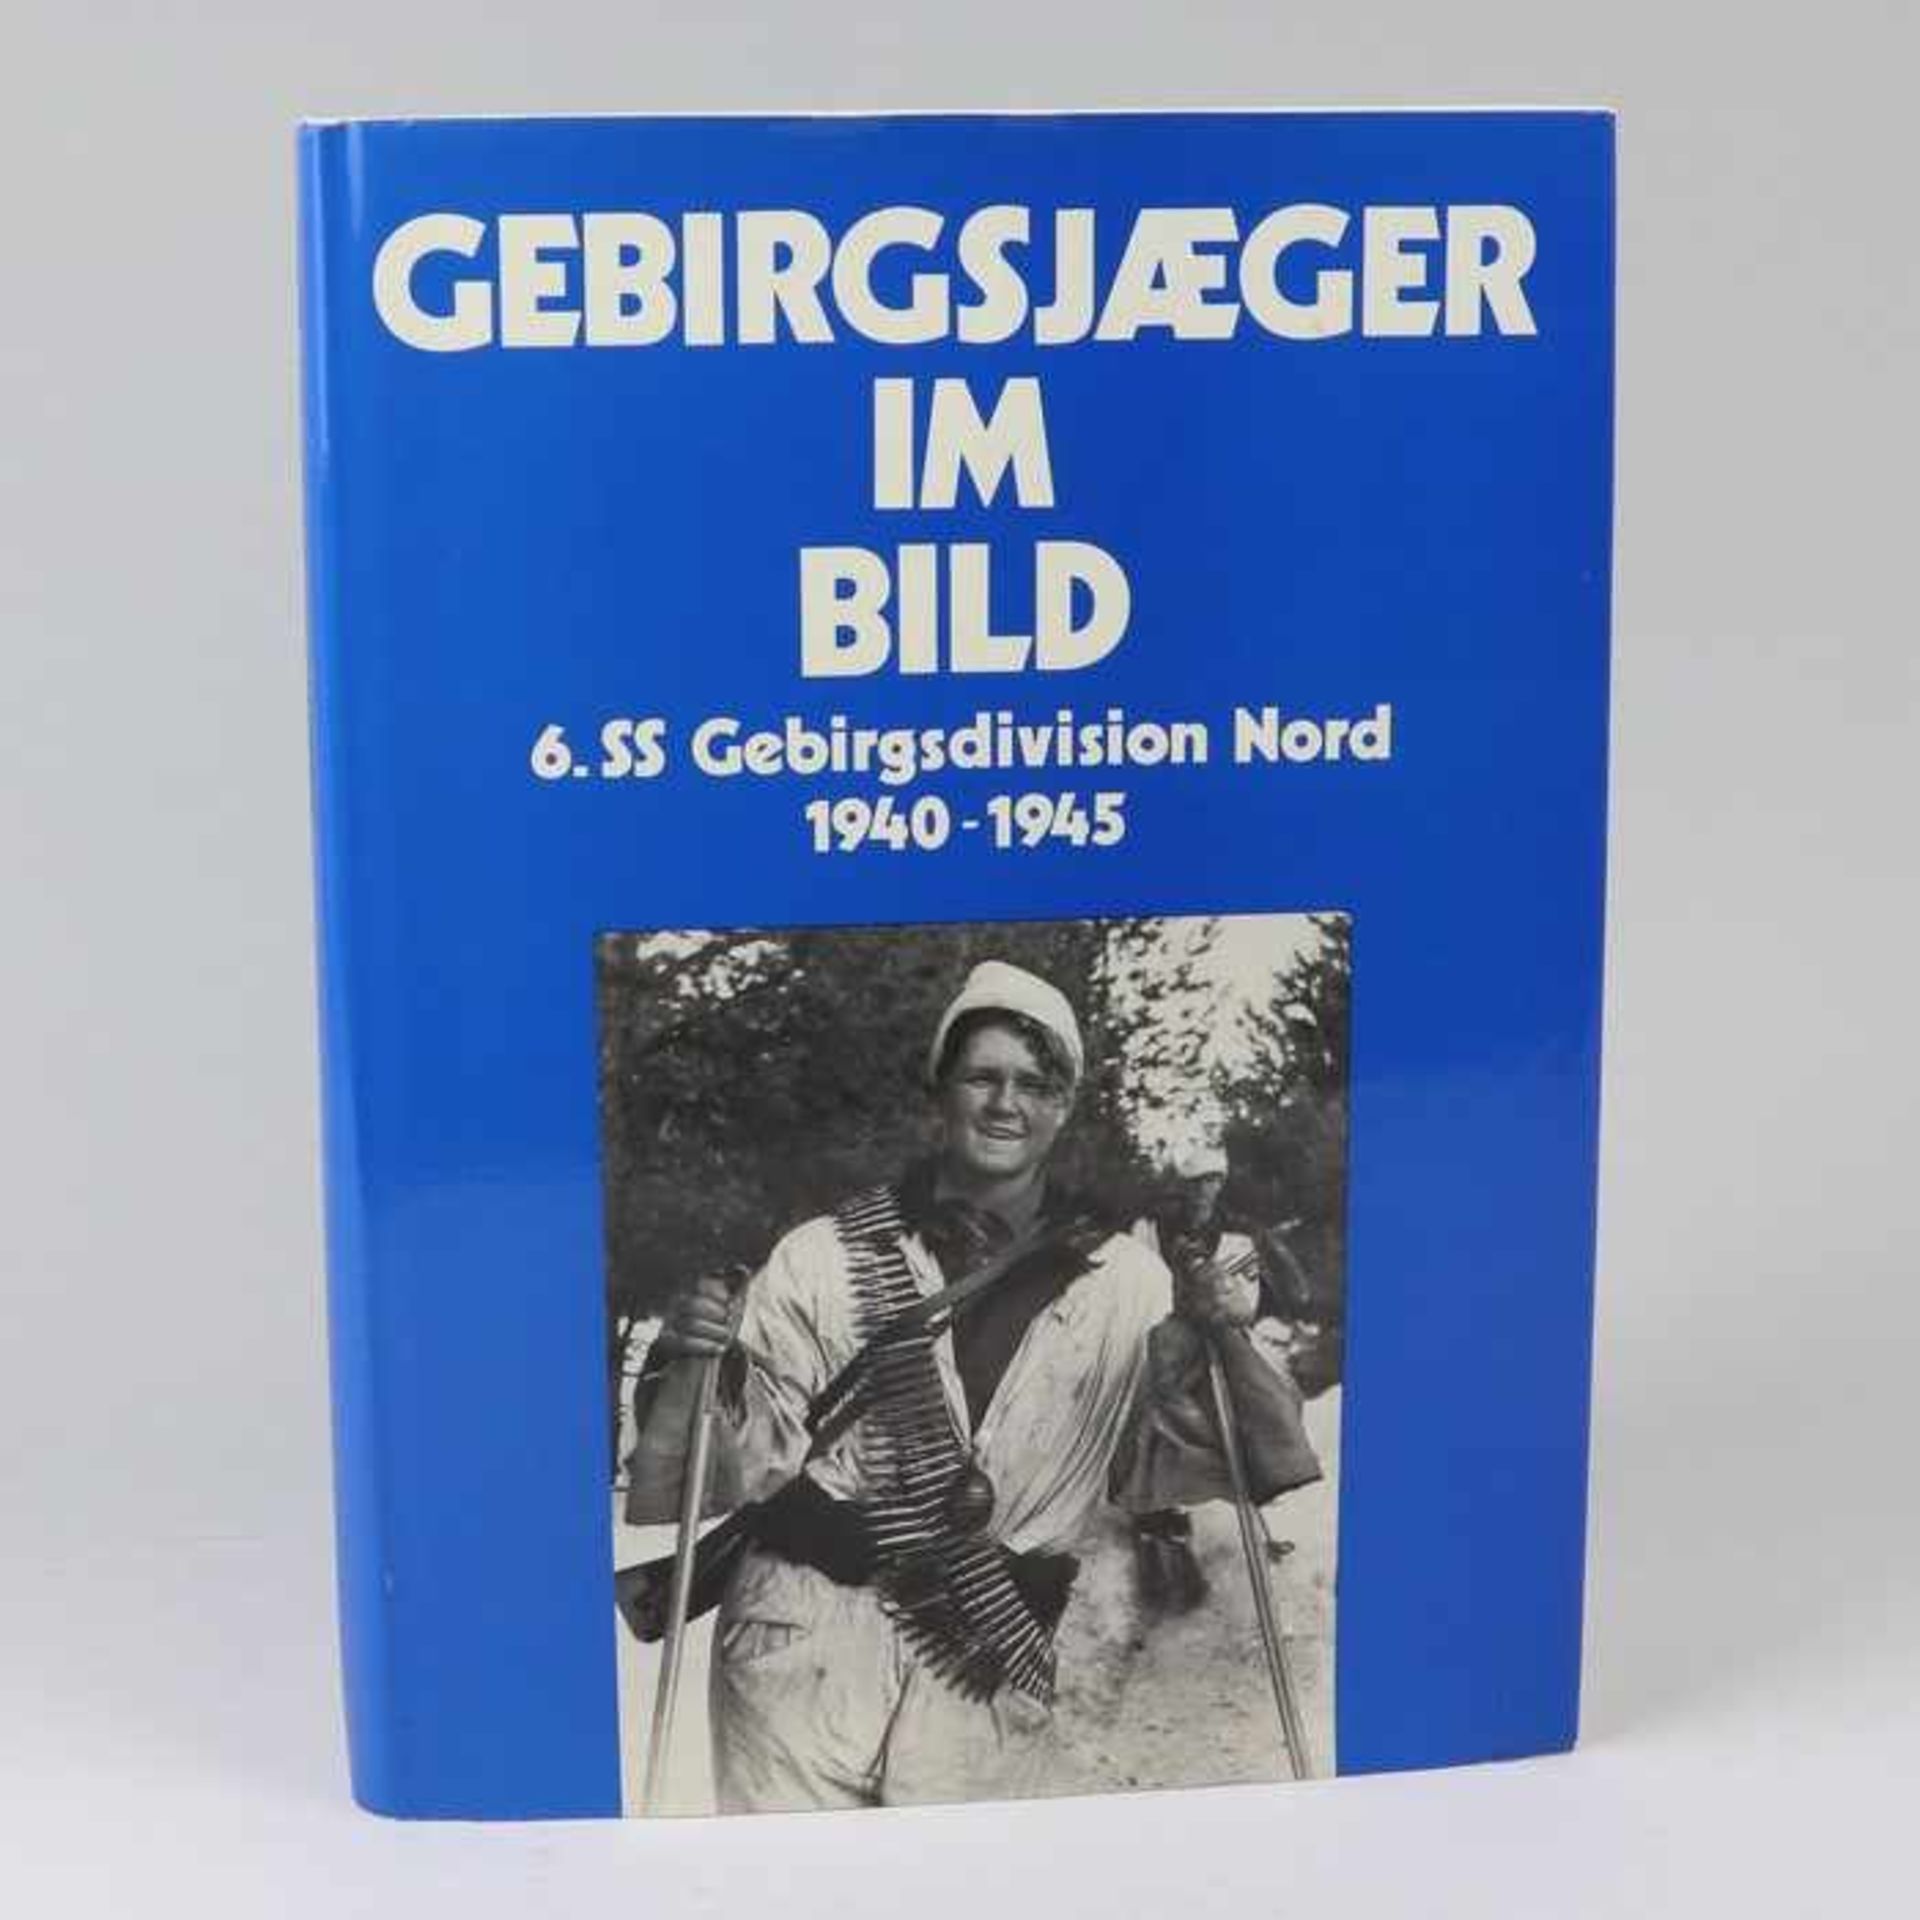 BuchSteurich, Alfred, "Gebirgsjäger im Bild 6. Gebirgsdivision Nord 1940-1945", Osnabrück Munin-